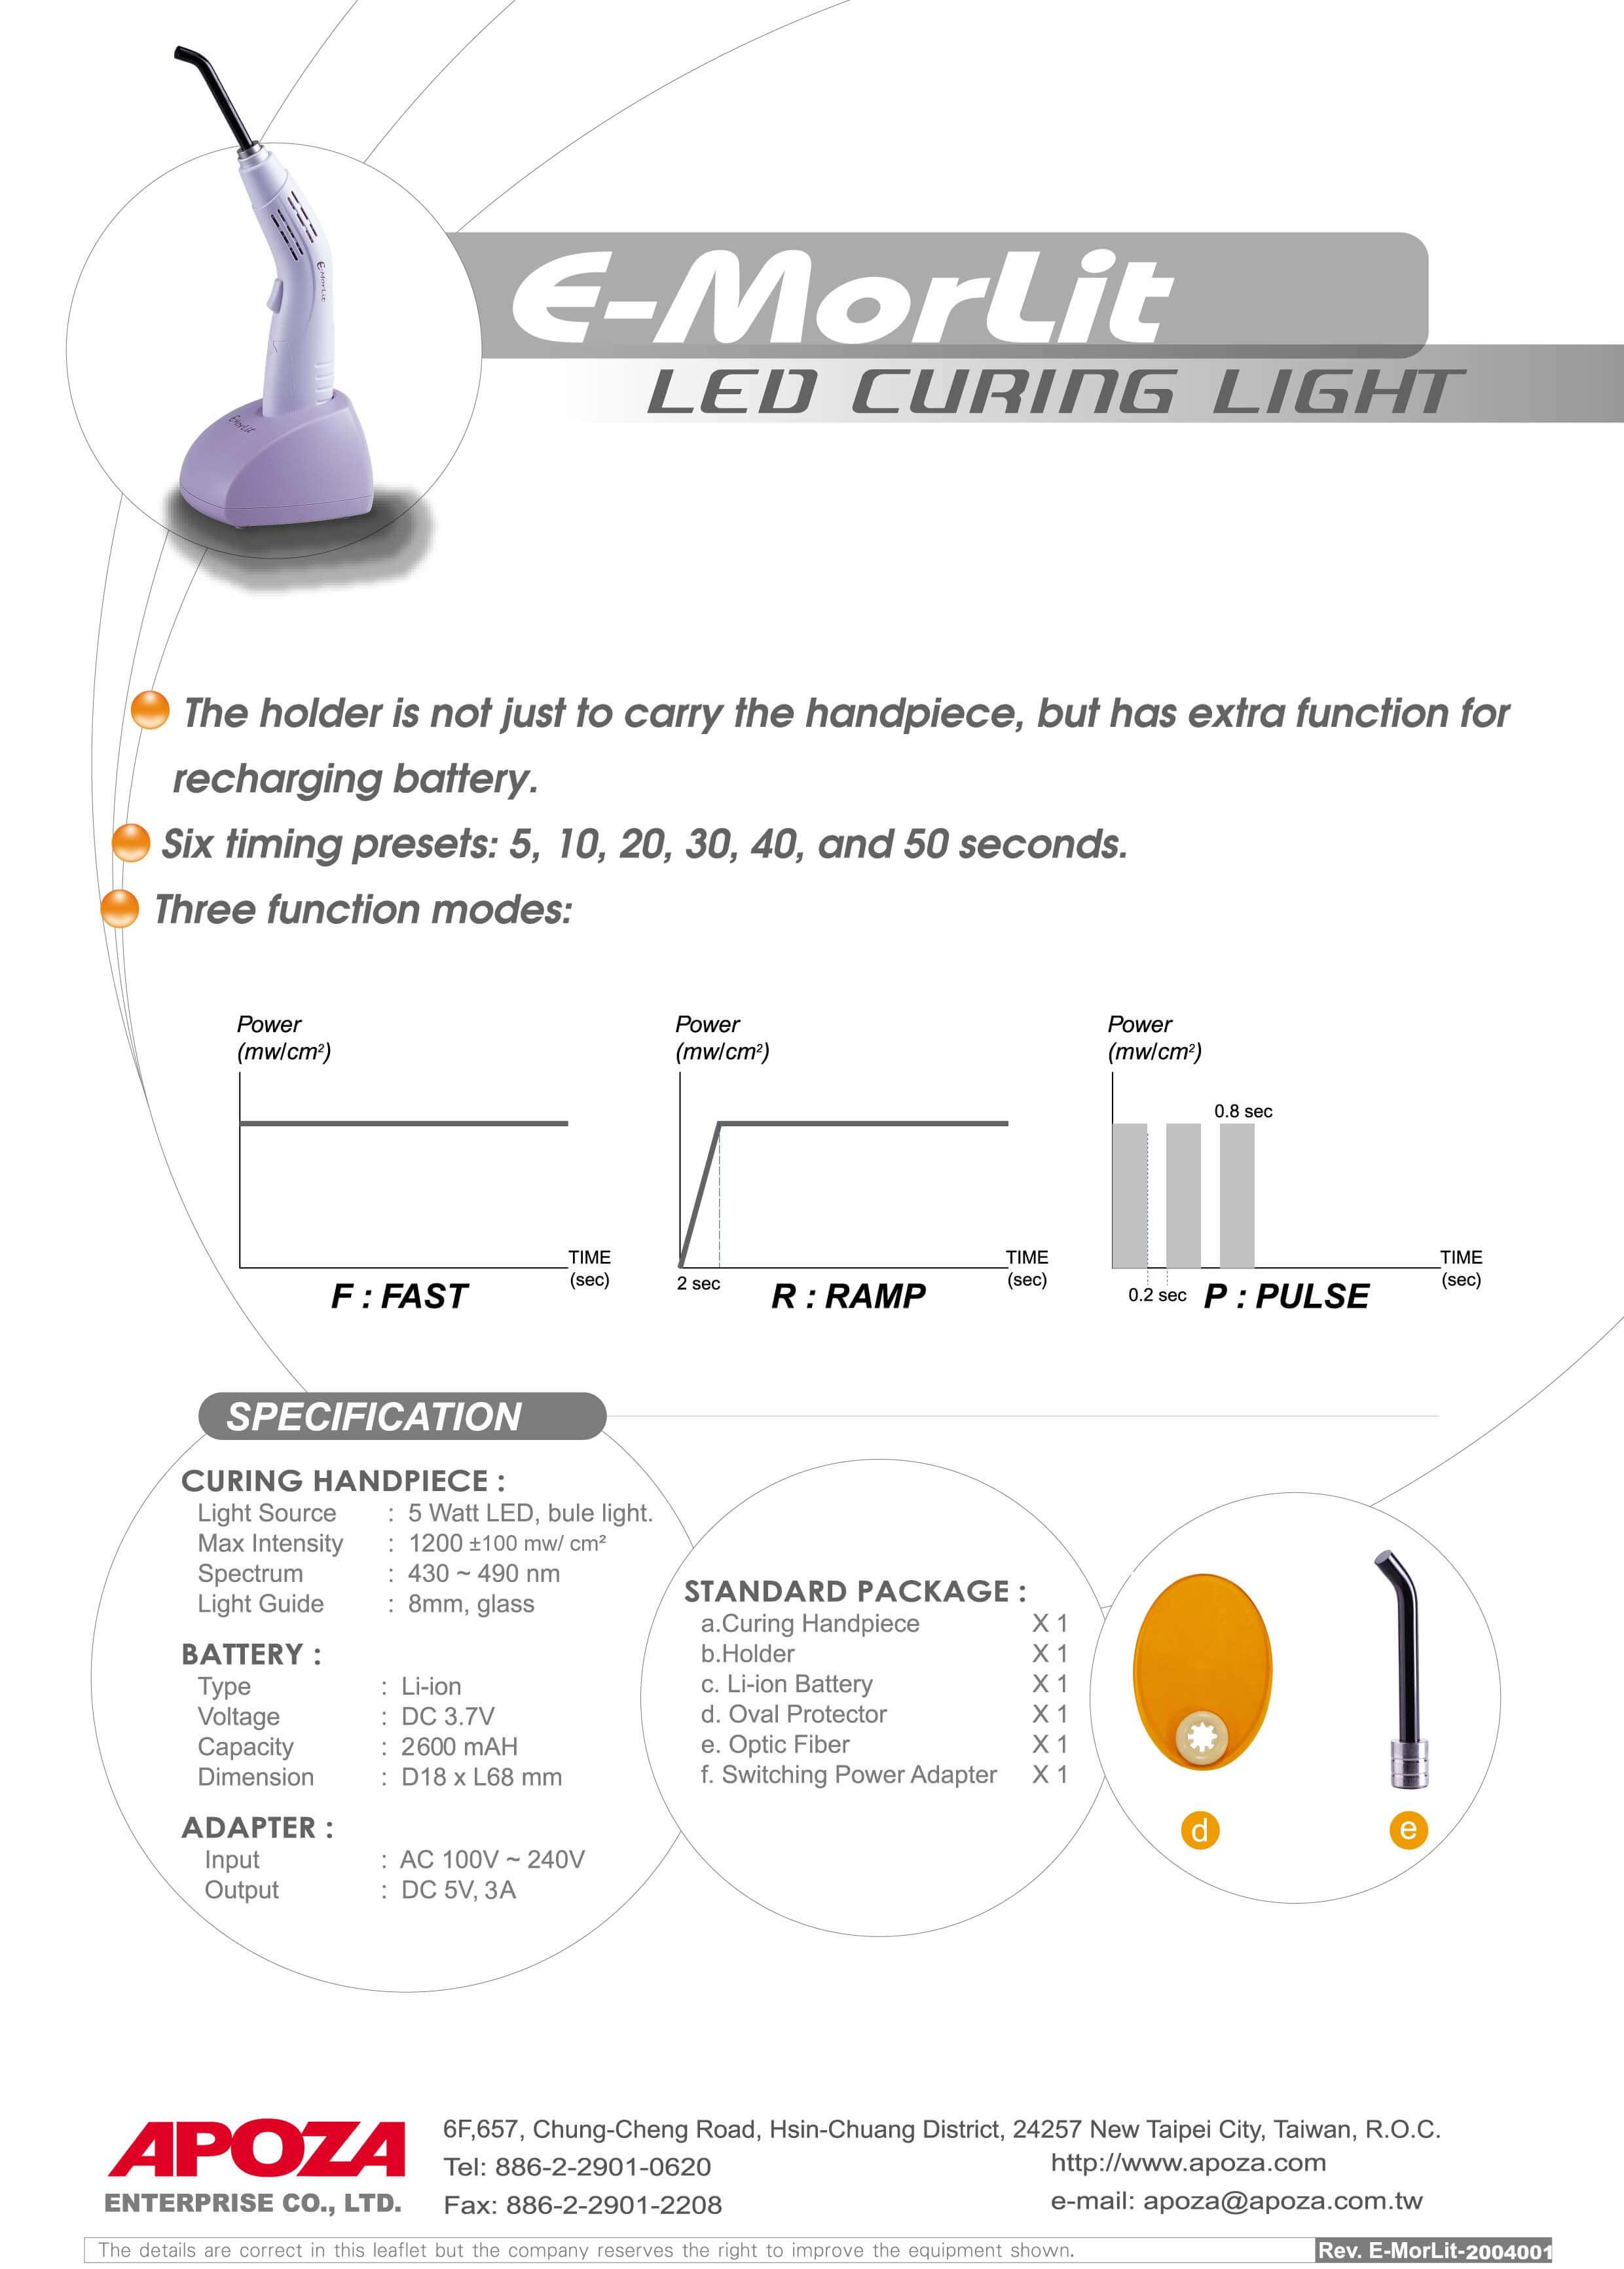 Top Light Turbo LED Curing Light - APOZA